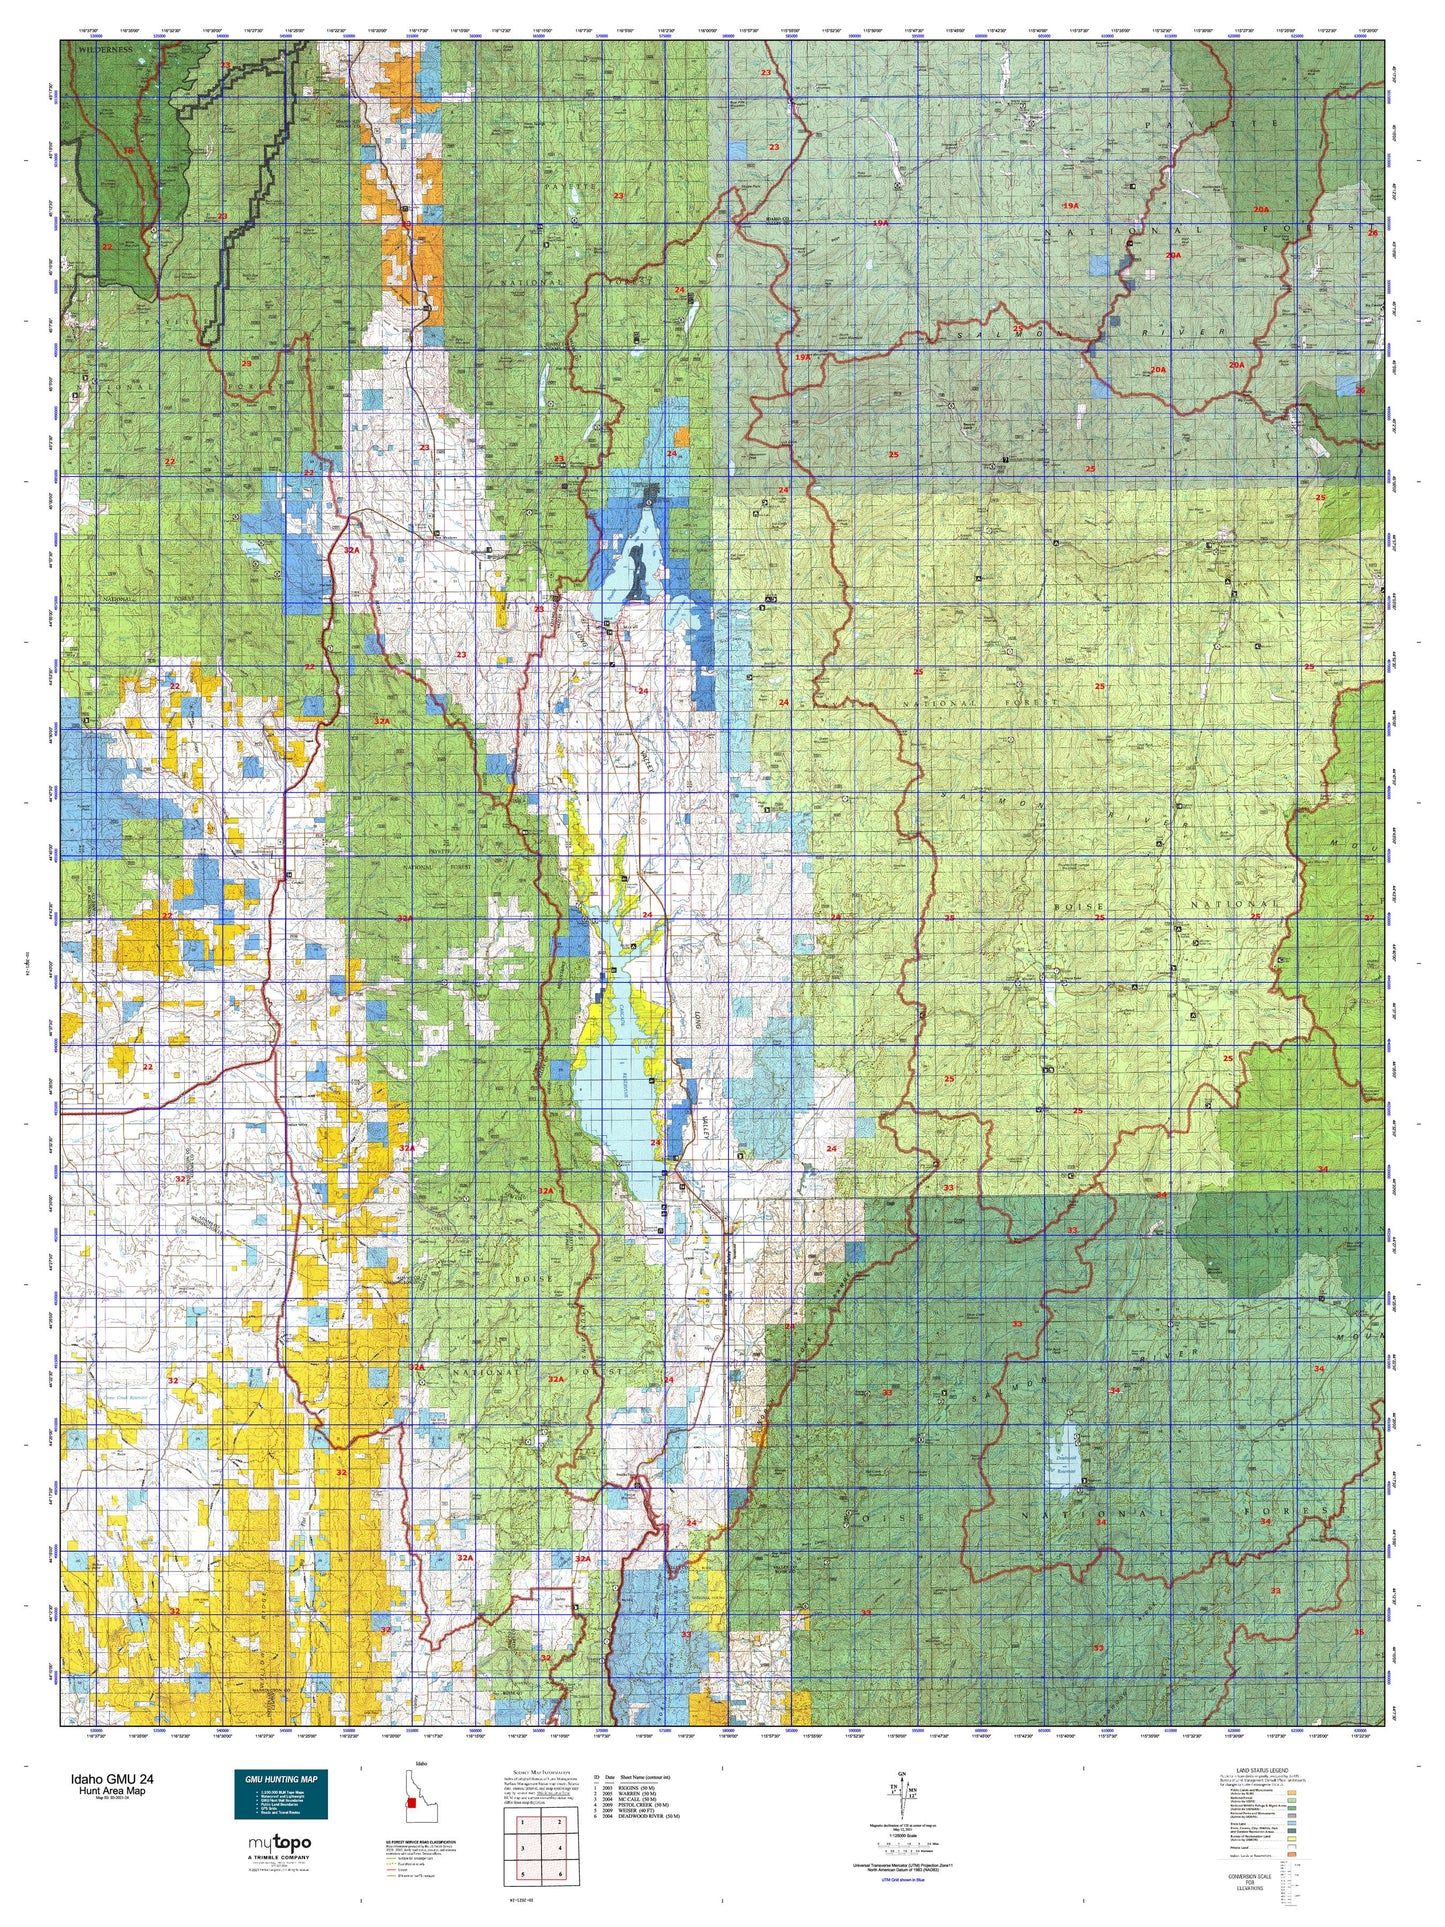 Idaho GMU 24 Map Image